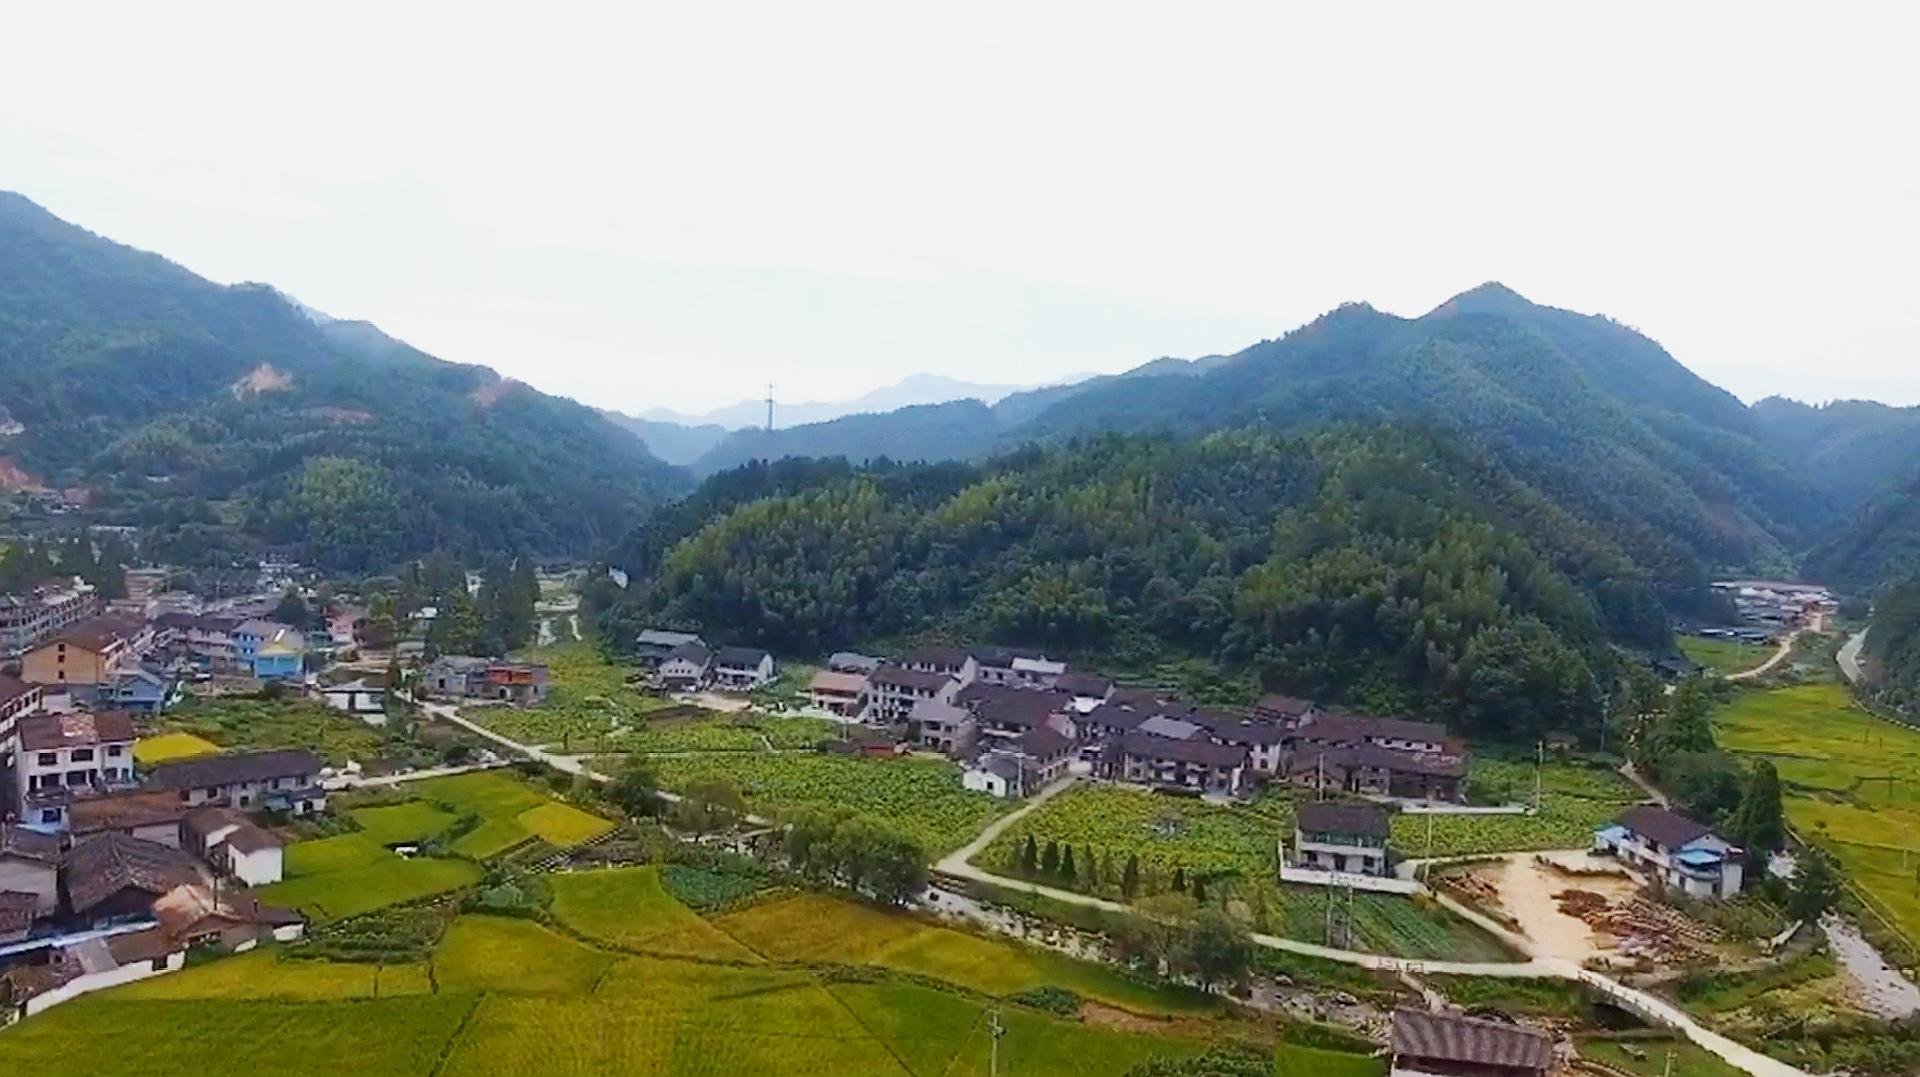 国内六大免费旅游景点,溪头村被誉为广州最美乡村,此生一定要去